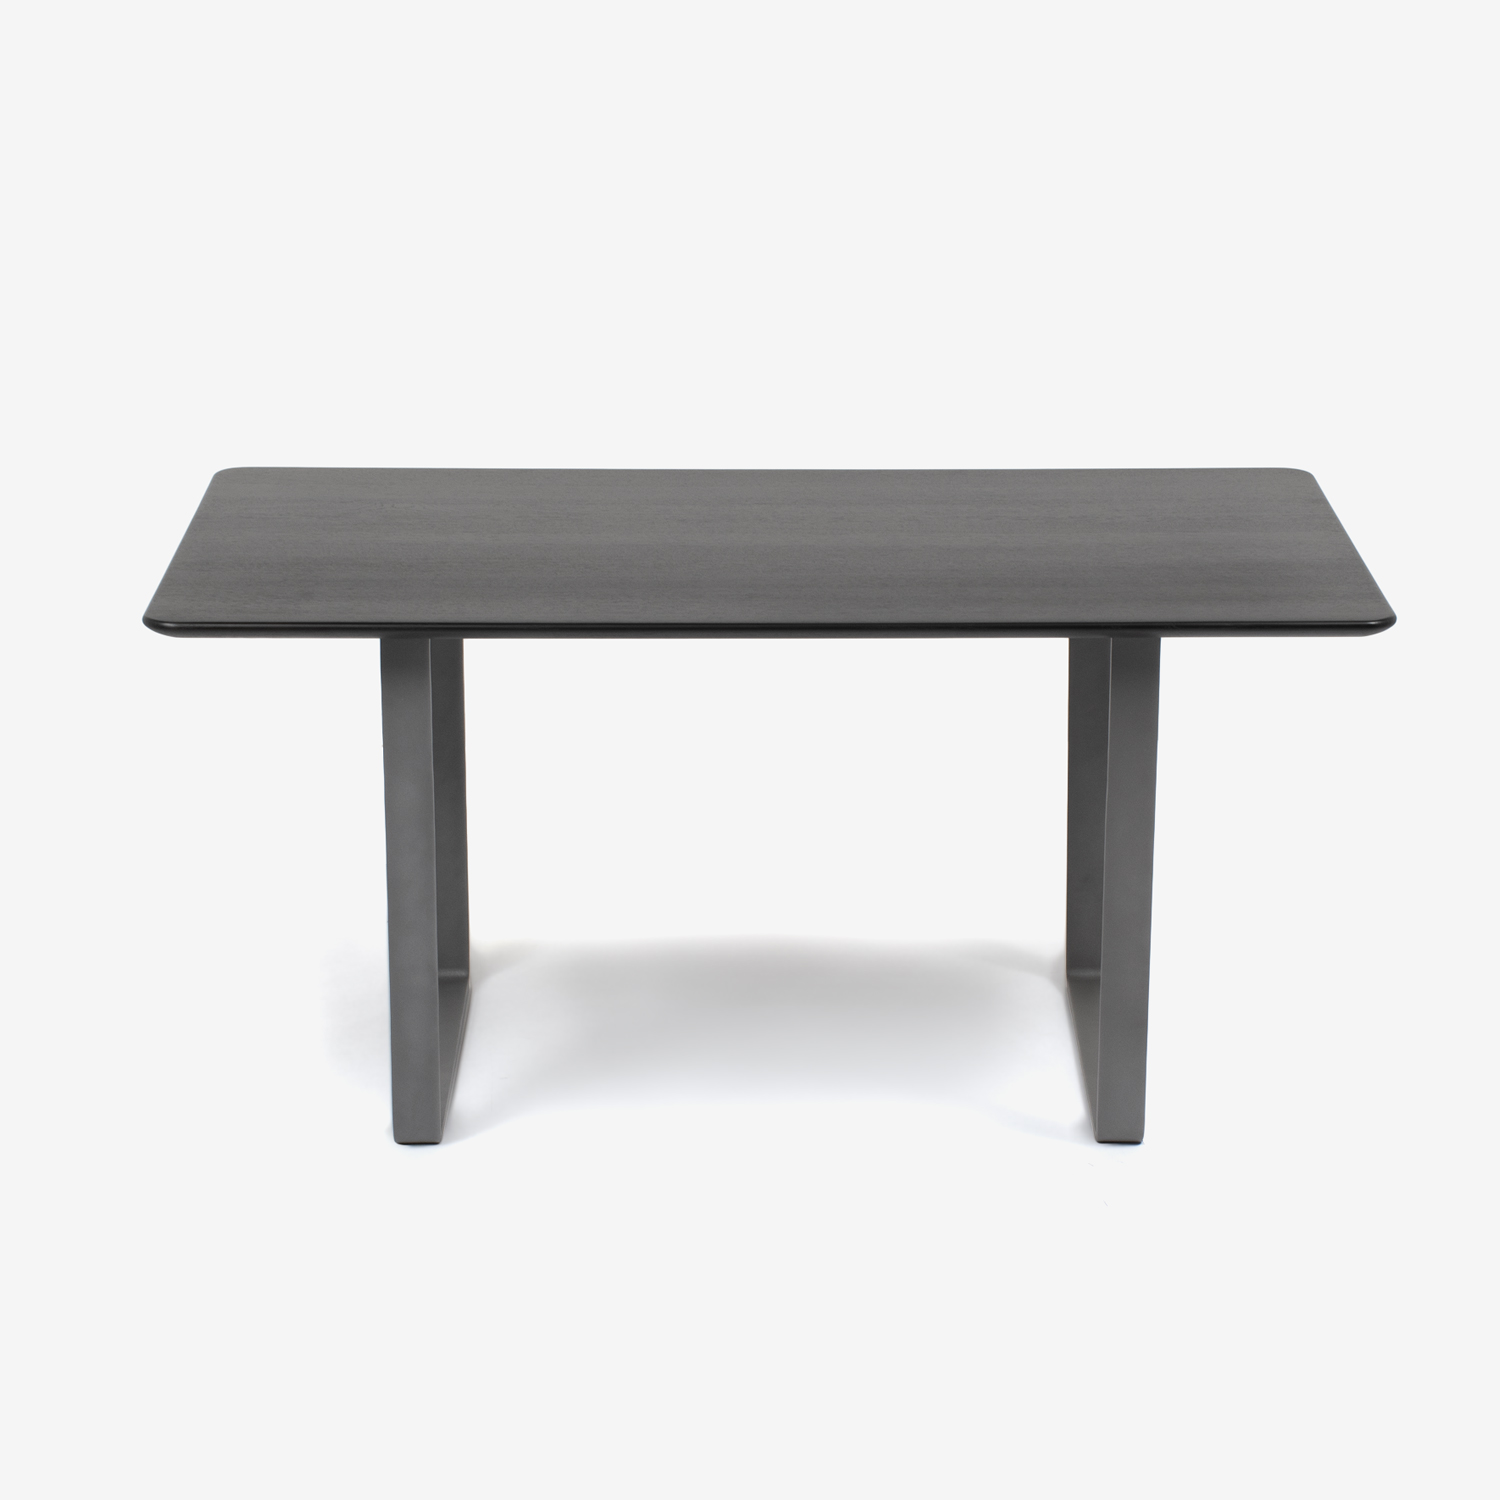 ダイニングテーブル「フィル3」天板角丸型 金属脚シルバー色 レッドオーク材 ダークブラウン色 全4サイズ